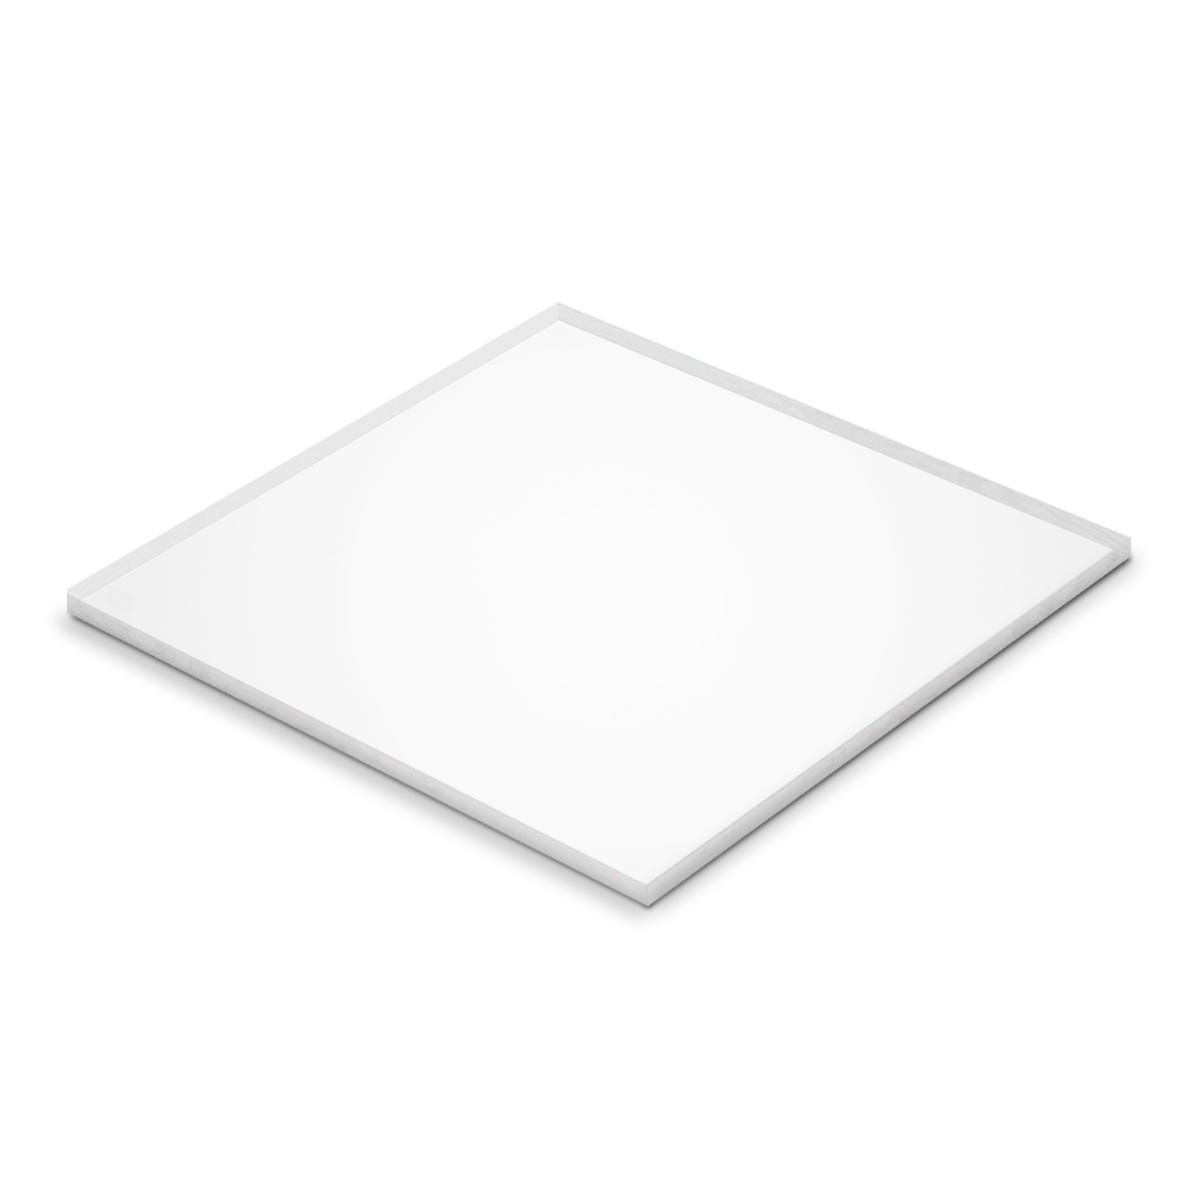 Planchas de PVC Transparente - Medidas 74,5 x 150cm - Espesor 4 mm